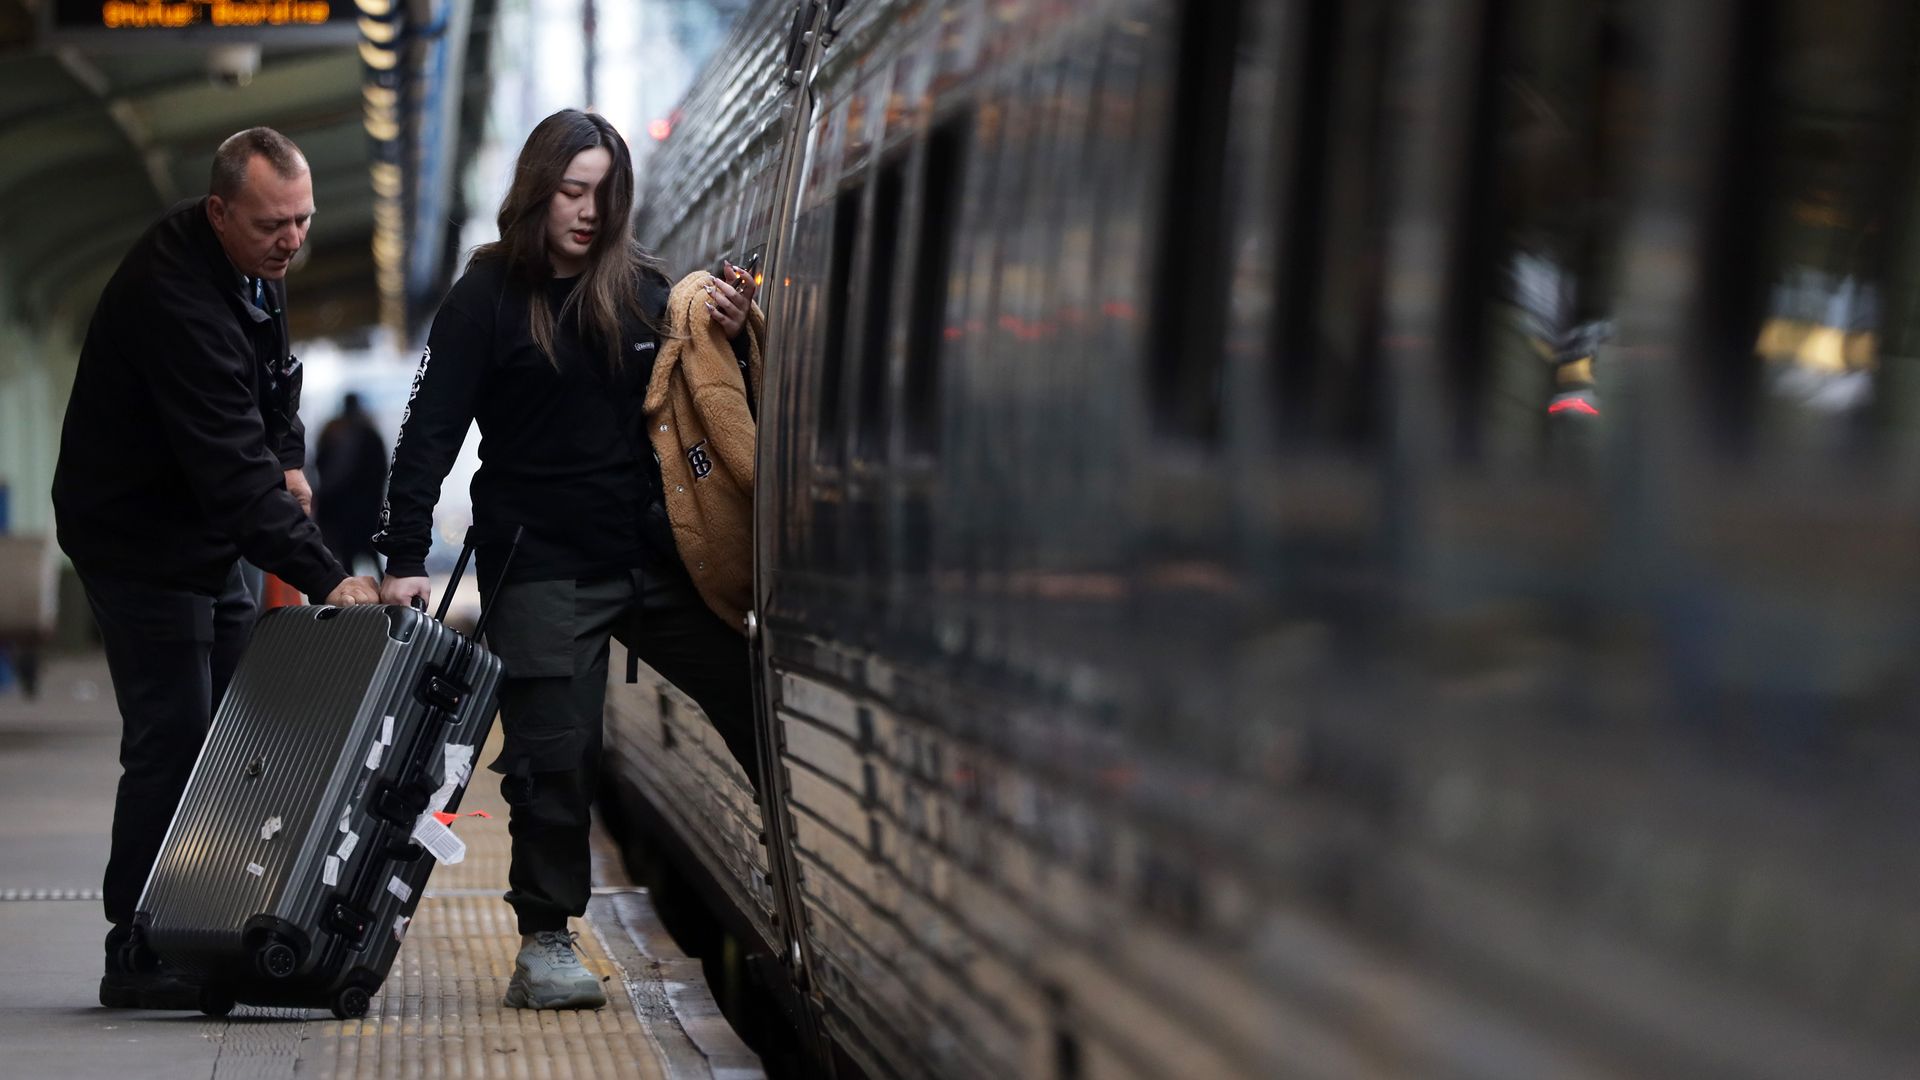 A passenger boarding an Amtrak train